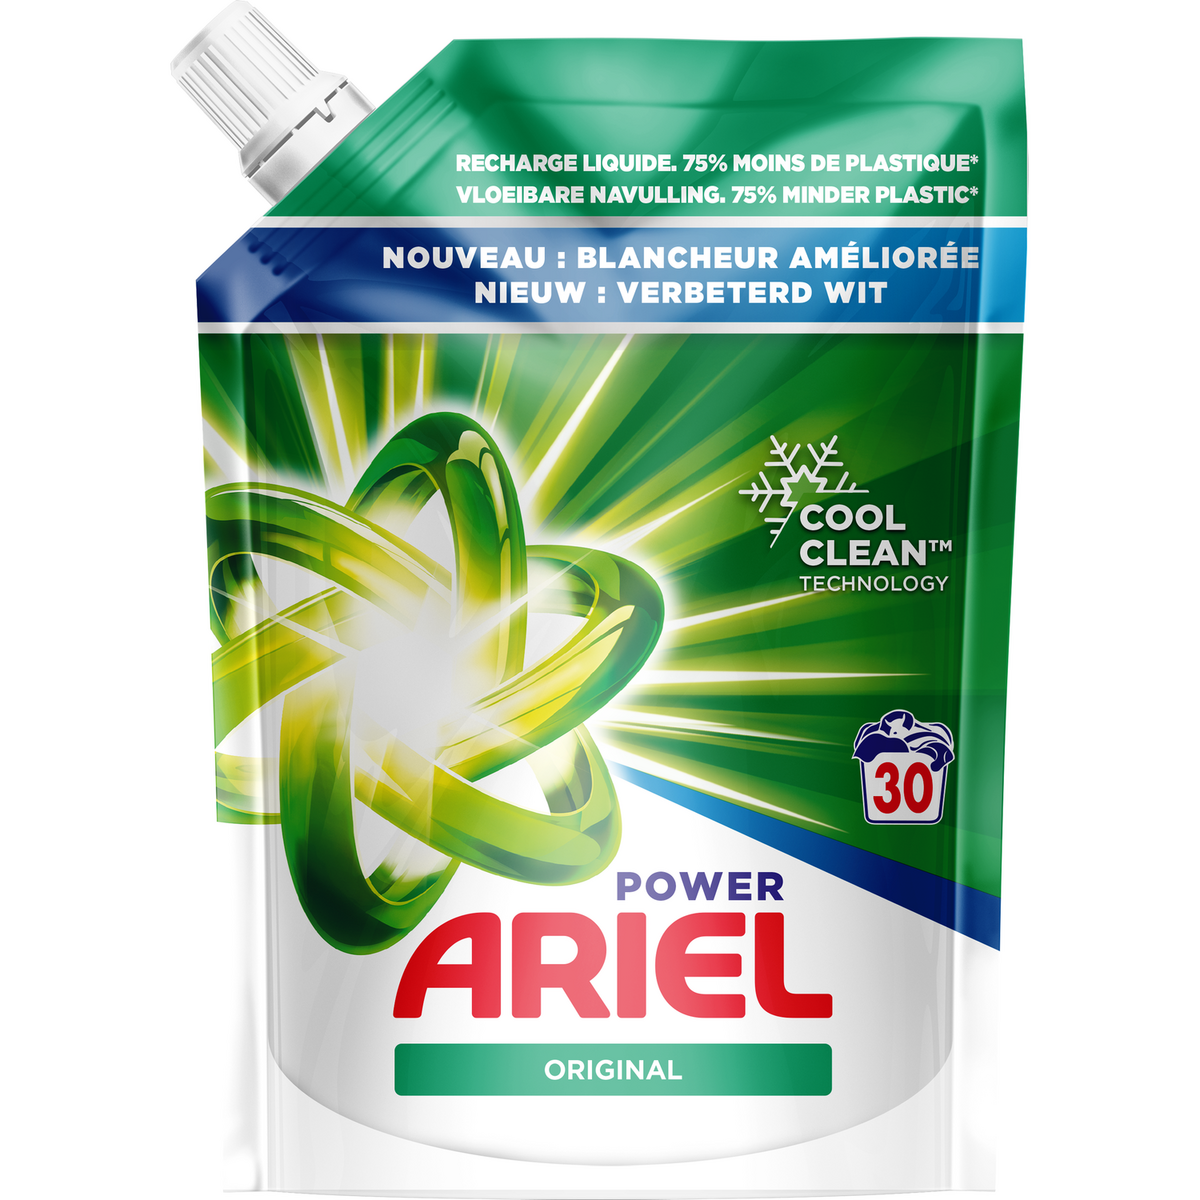 ARIEL Power Recharge lessive liquide original 30 lavages 1.5l pas